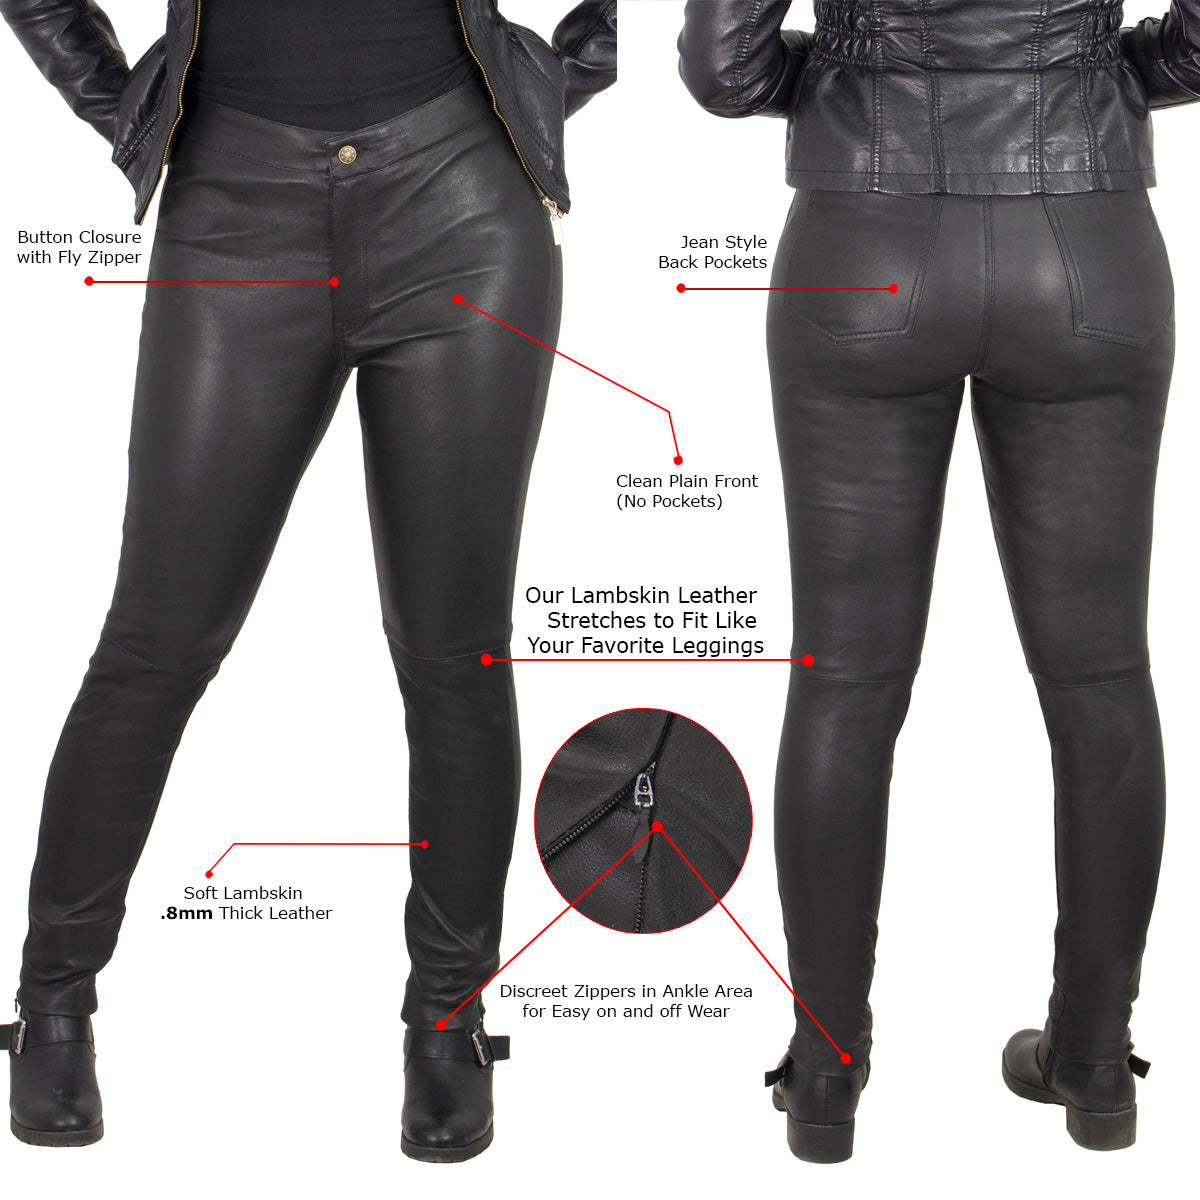 Black Pants - Patent Leather Pants - Zipper And Snapbutton Closure Pants